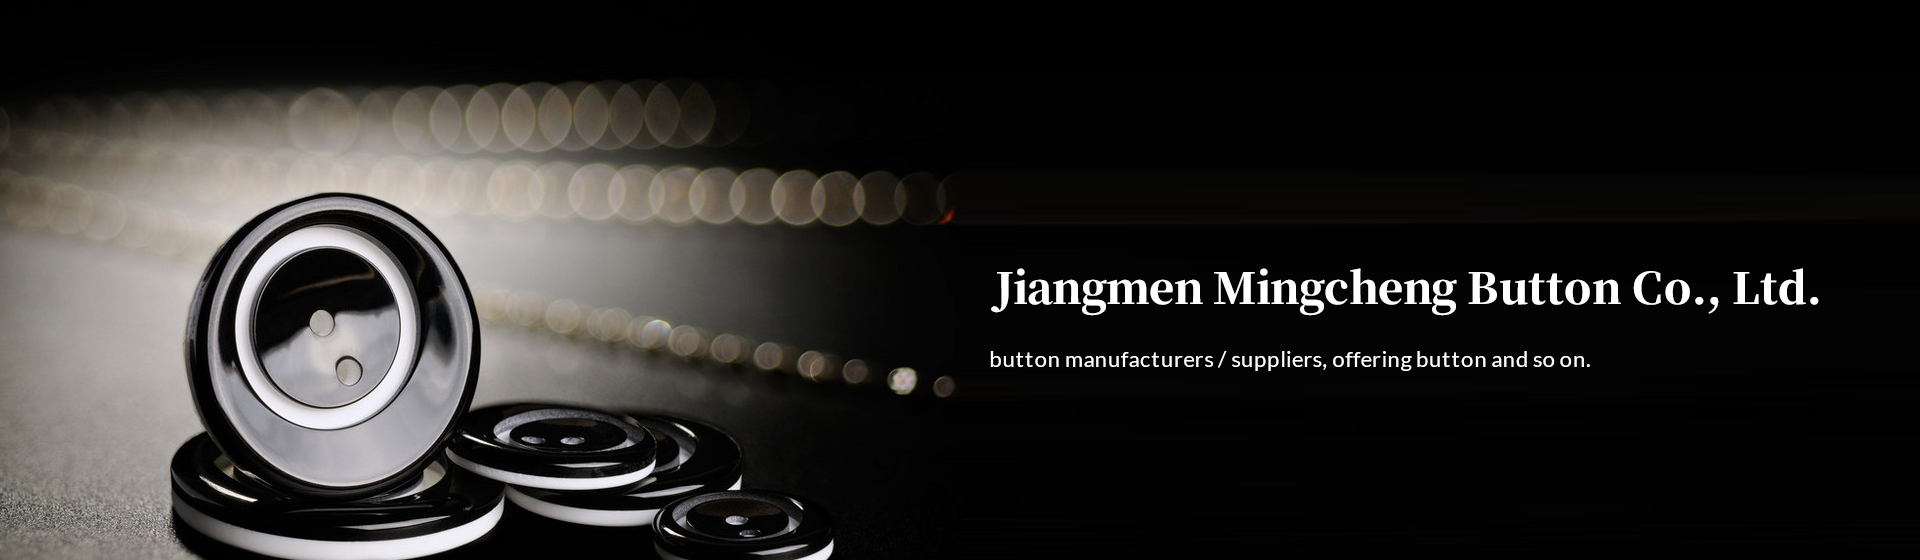 Jiangmen Mingcheng Button Co., Ltd.